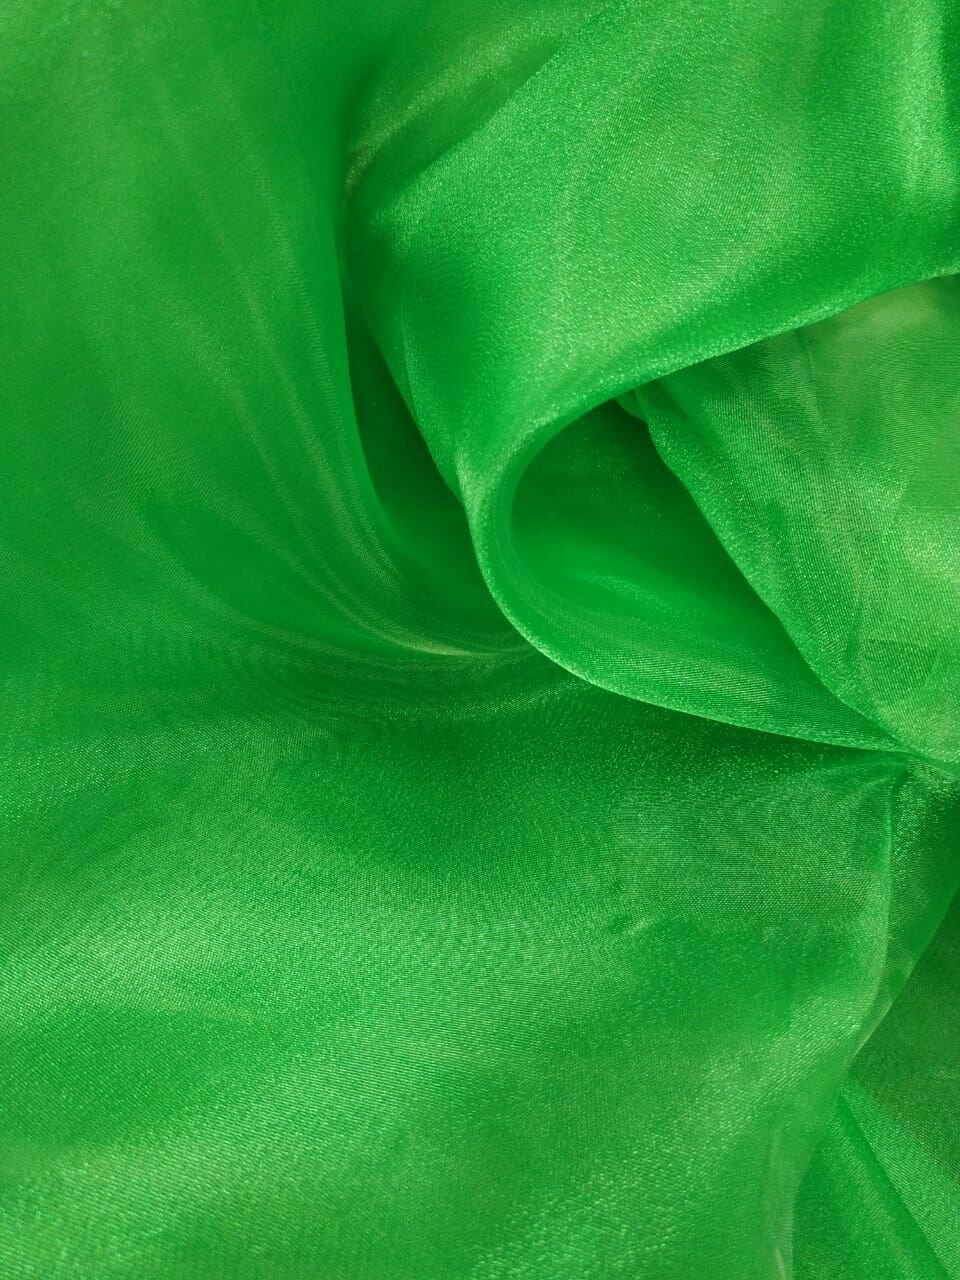 Ткань для шитья и рукоделия Органза  цвет зеленый отрез ткани 2м 80см ширина 150 см.